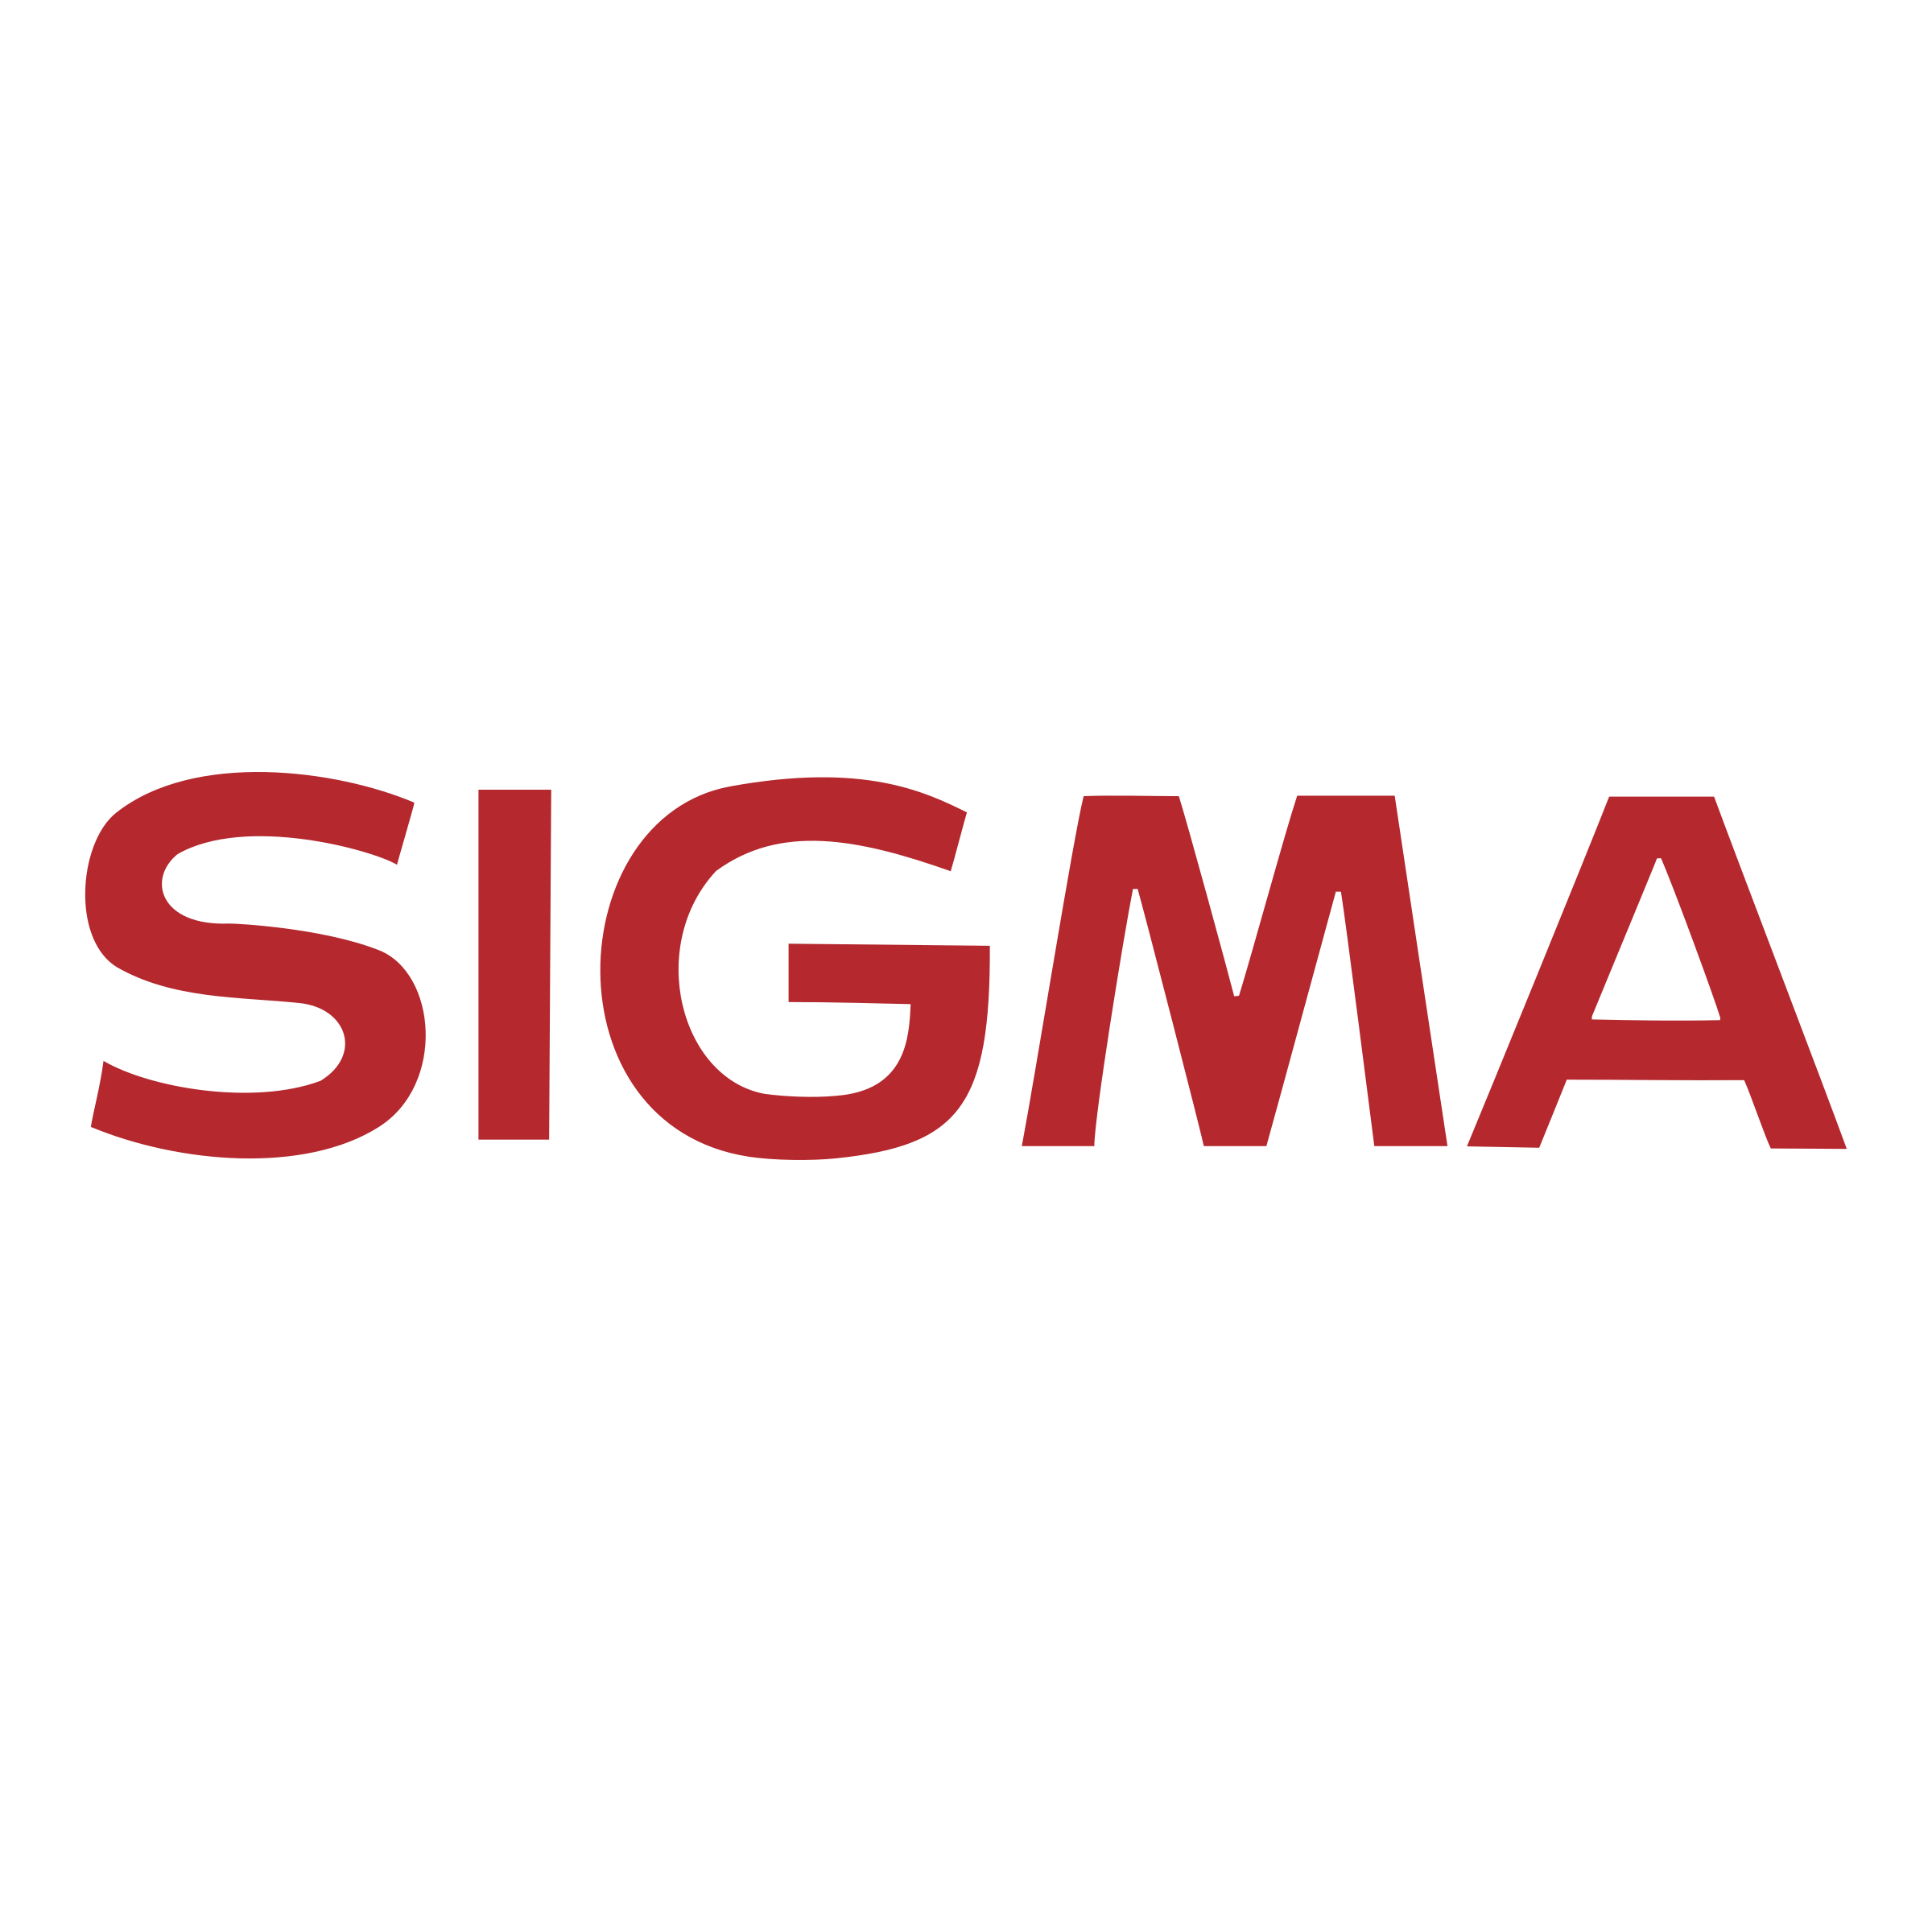 Сигма производитель. Сигма. Сигма бренд. Фирма Сигма логотип. Sigma реклама.